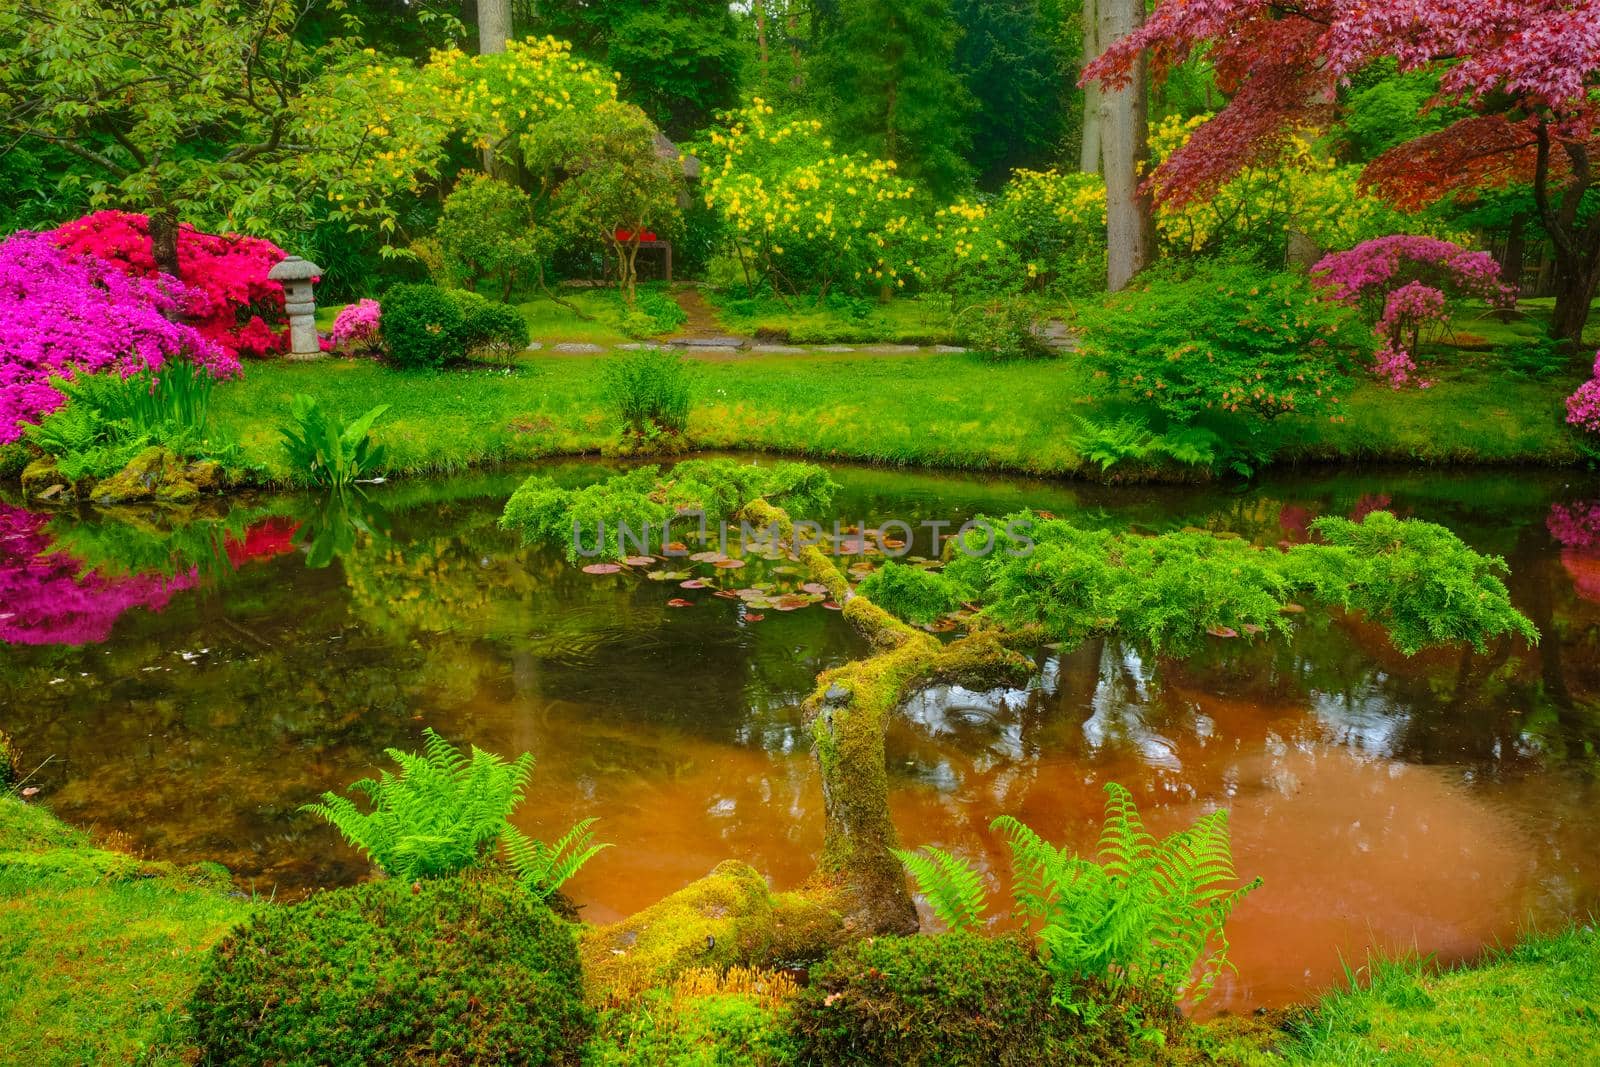 Little Japanese garden after rain, Park Clingendael, The Hague, Netherlands